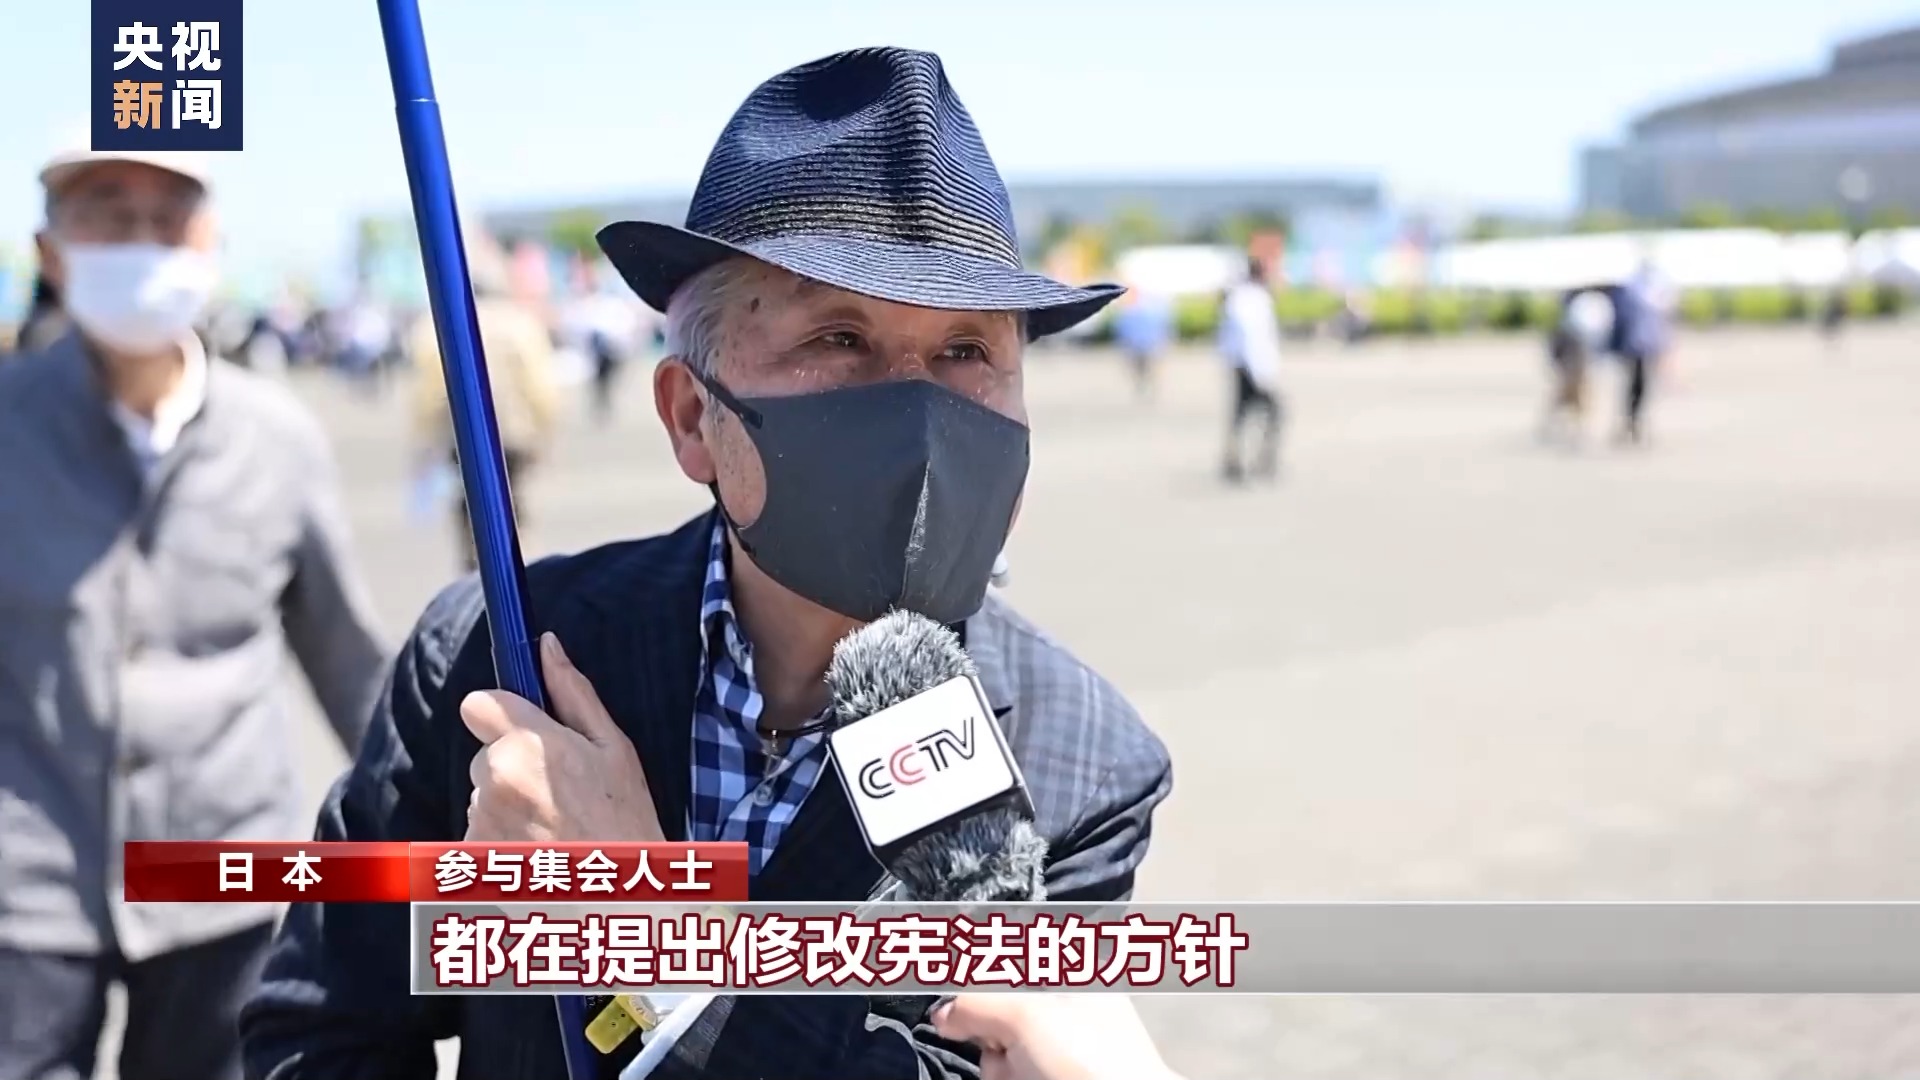 總臺記者直擊丨超三萬名日本民眾集會 守護和平反對修憲